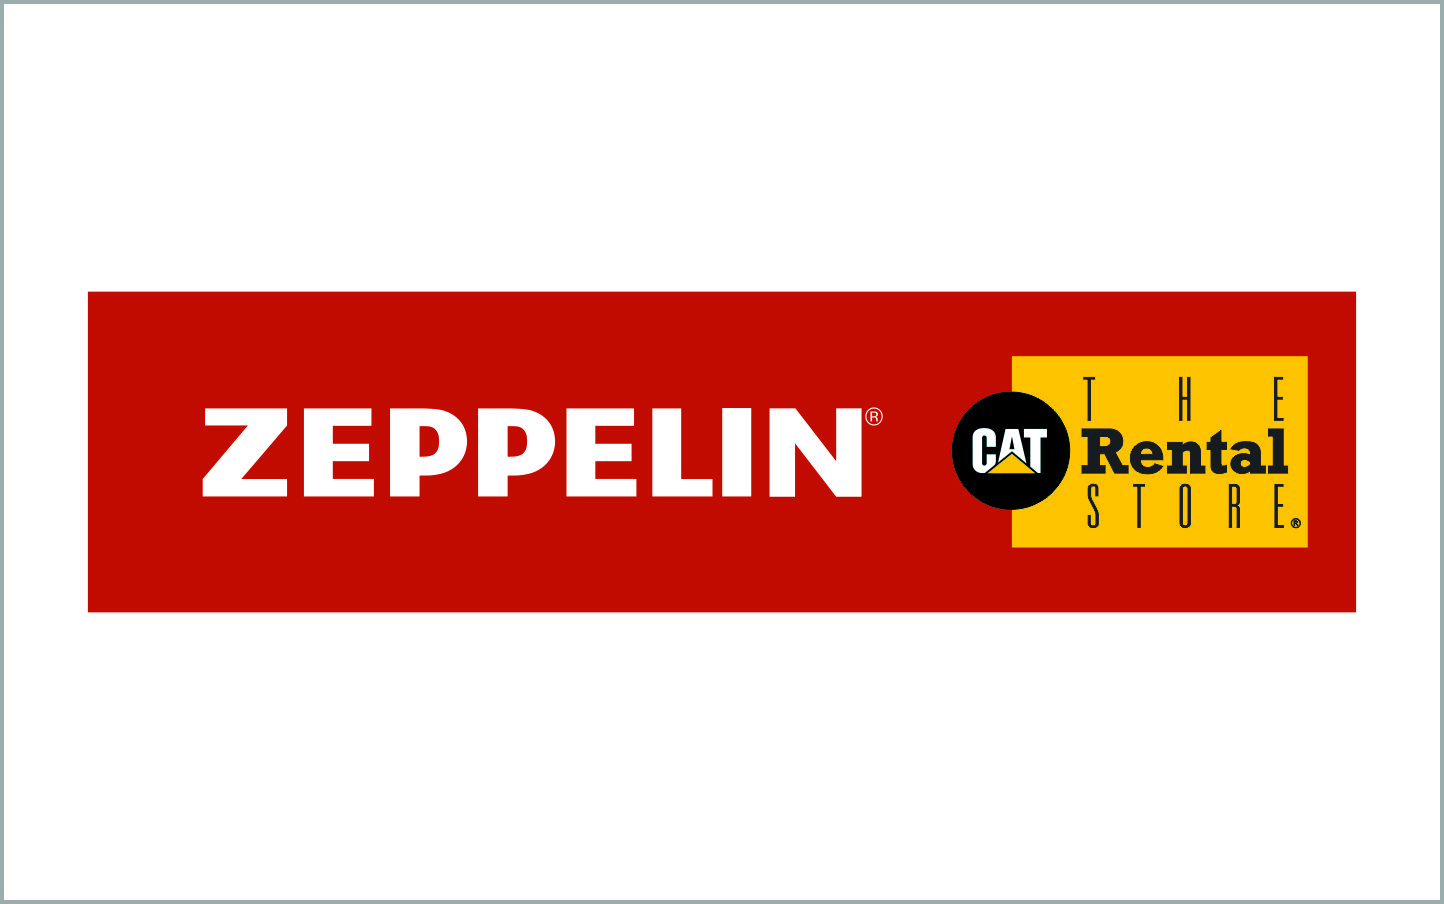 ZeppelinRental